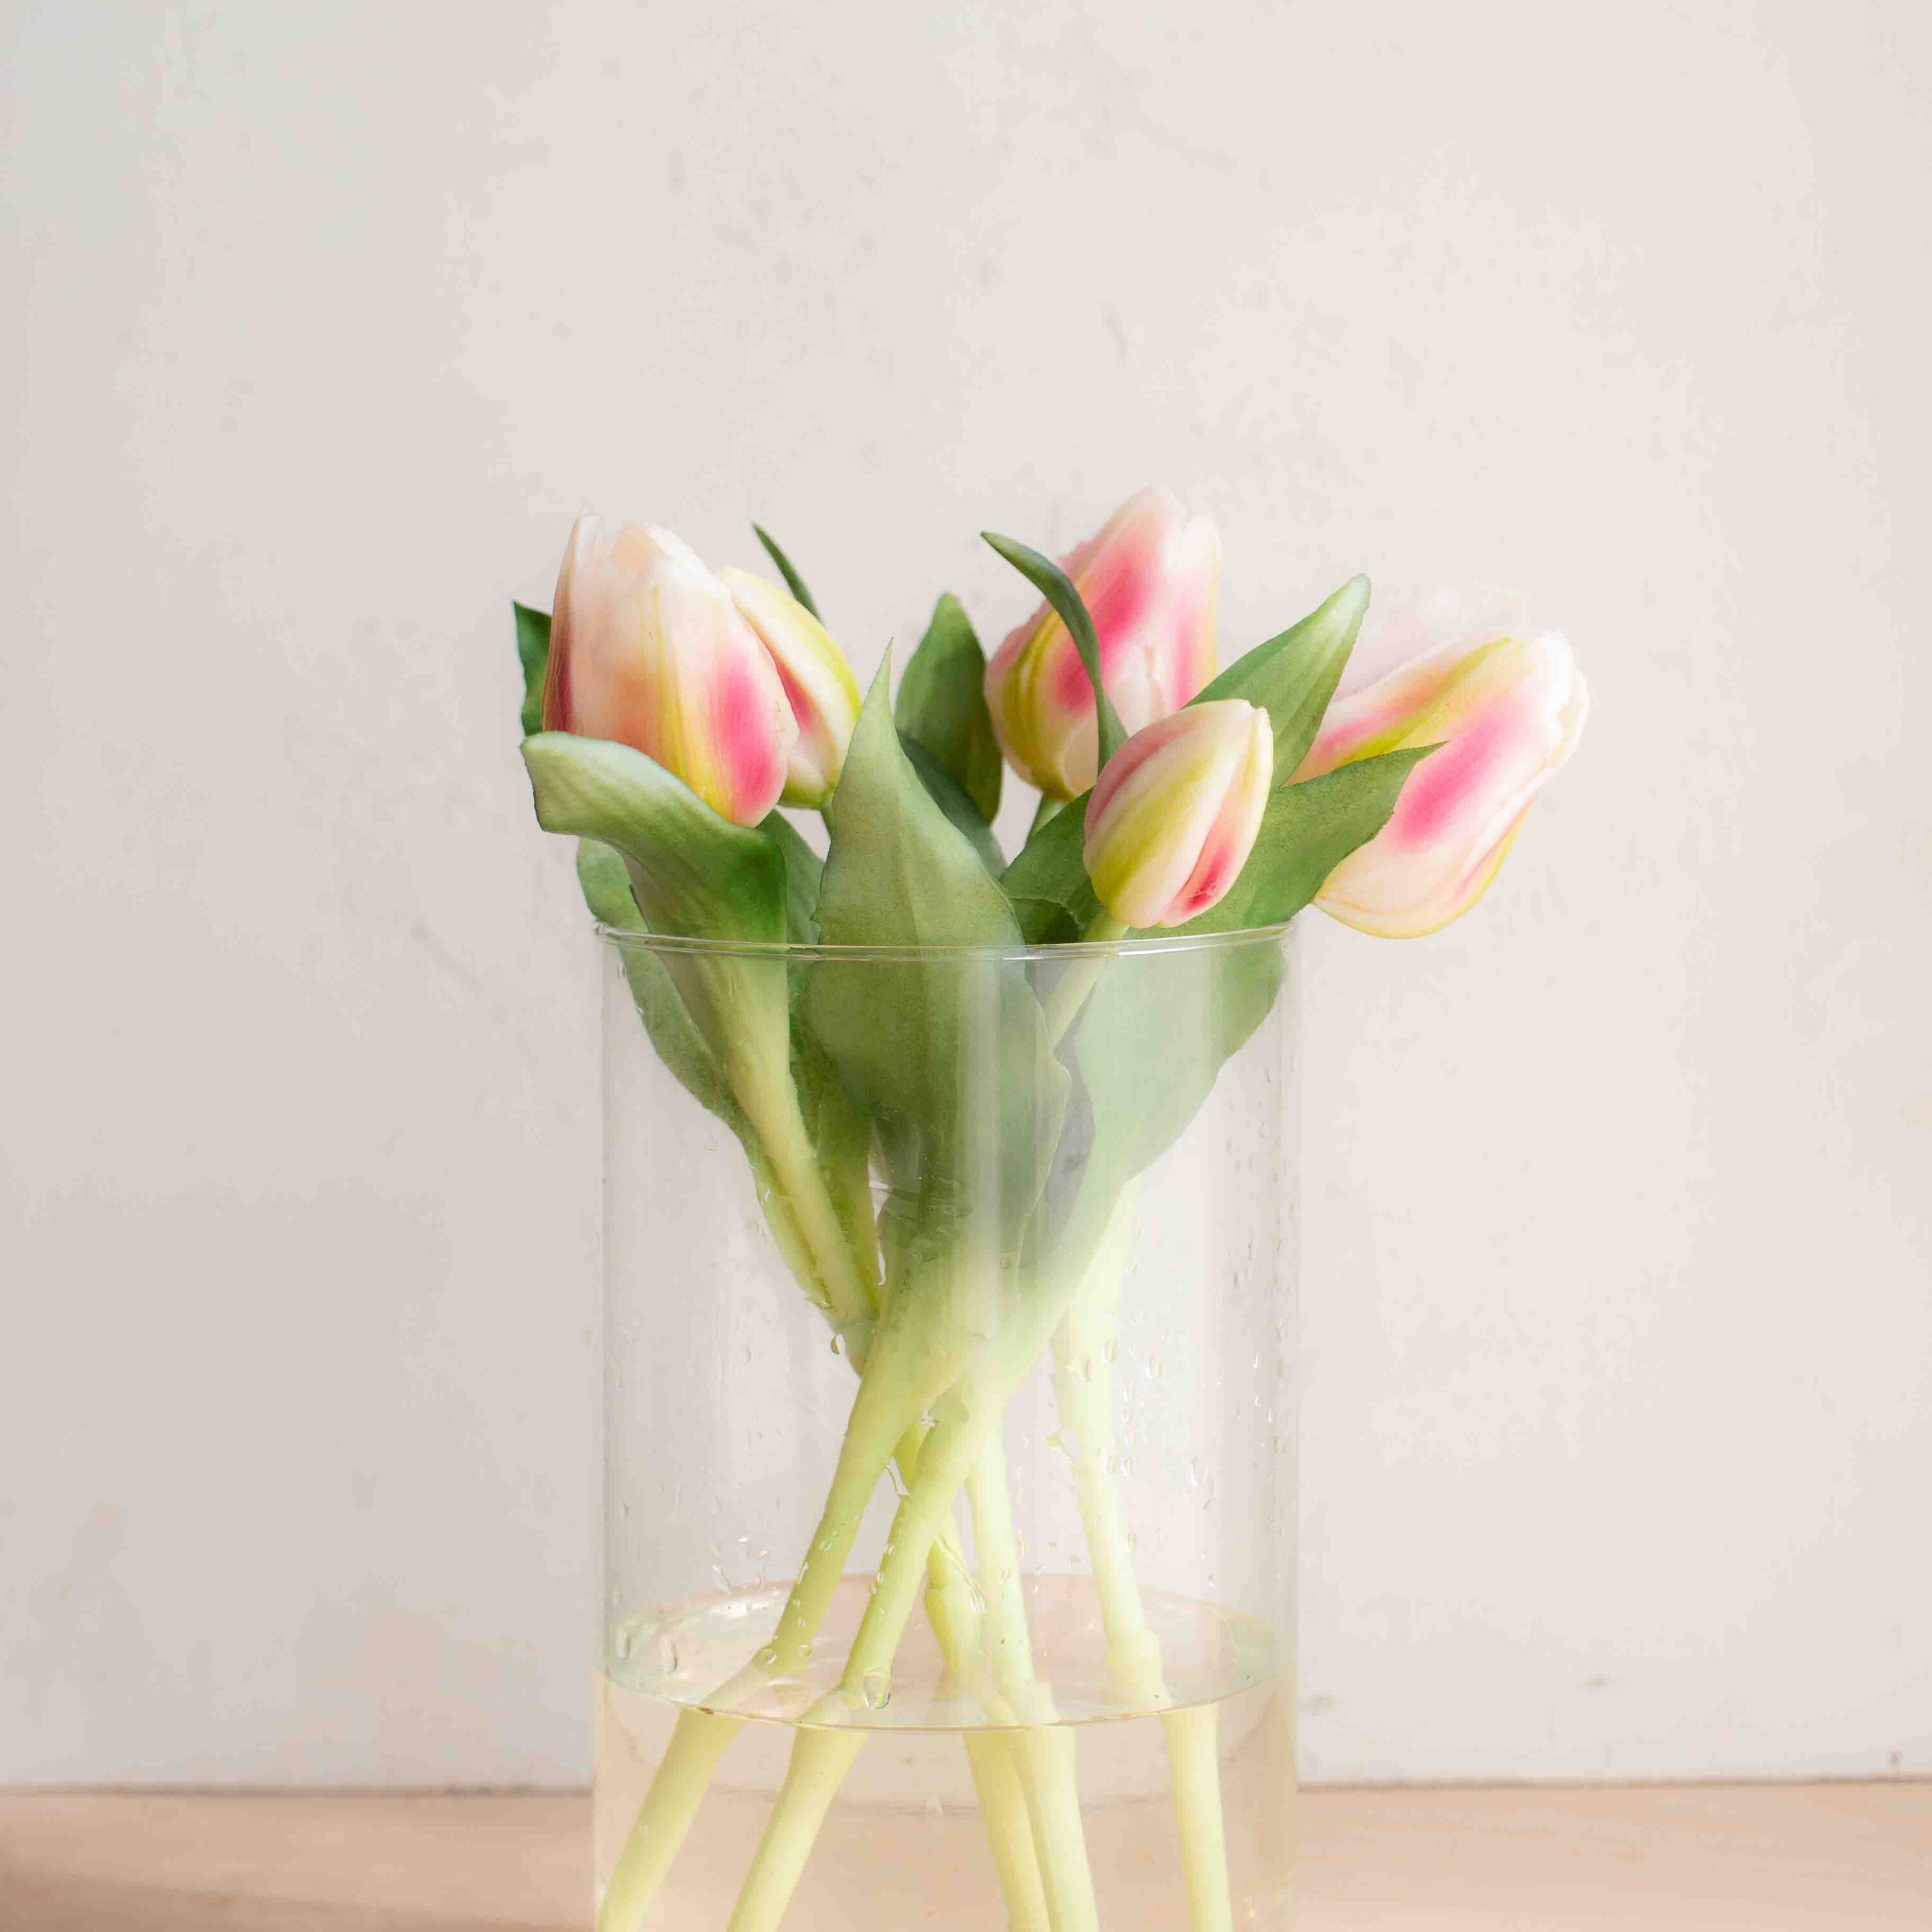 bellissimi tulipani real touch, estremamente realistici colore screziato